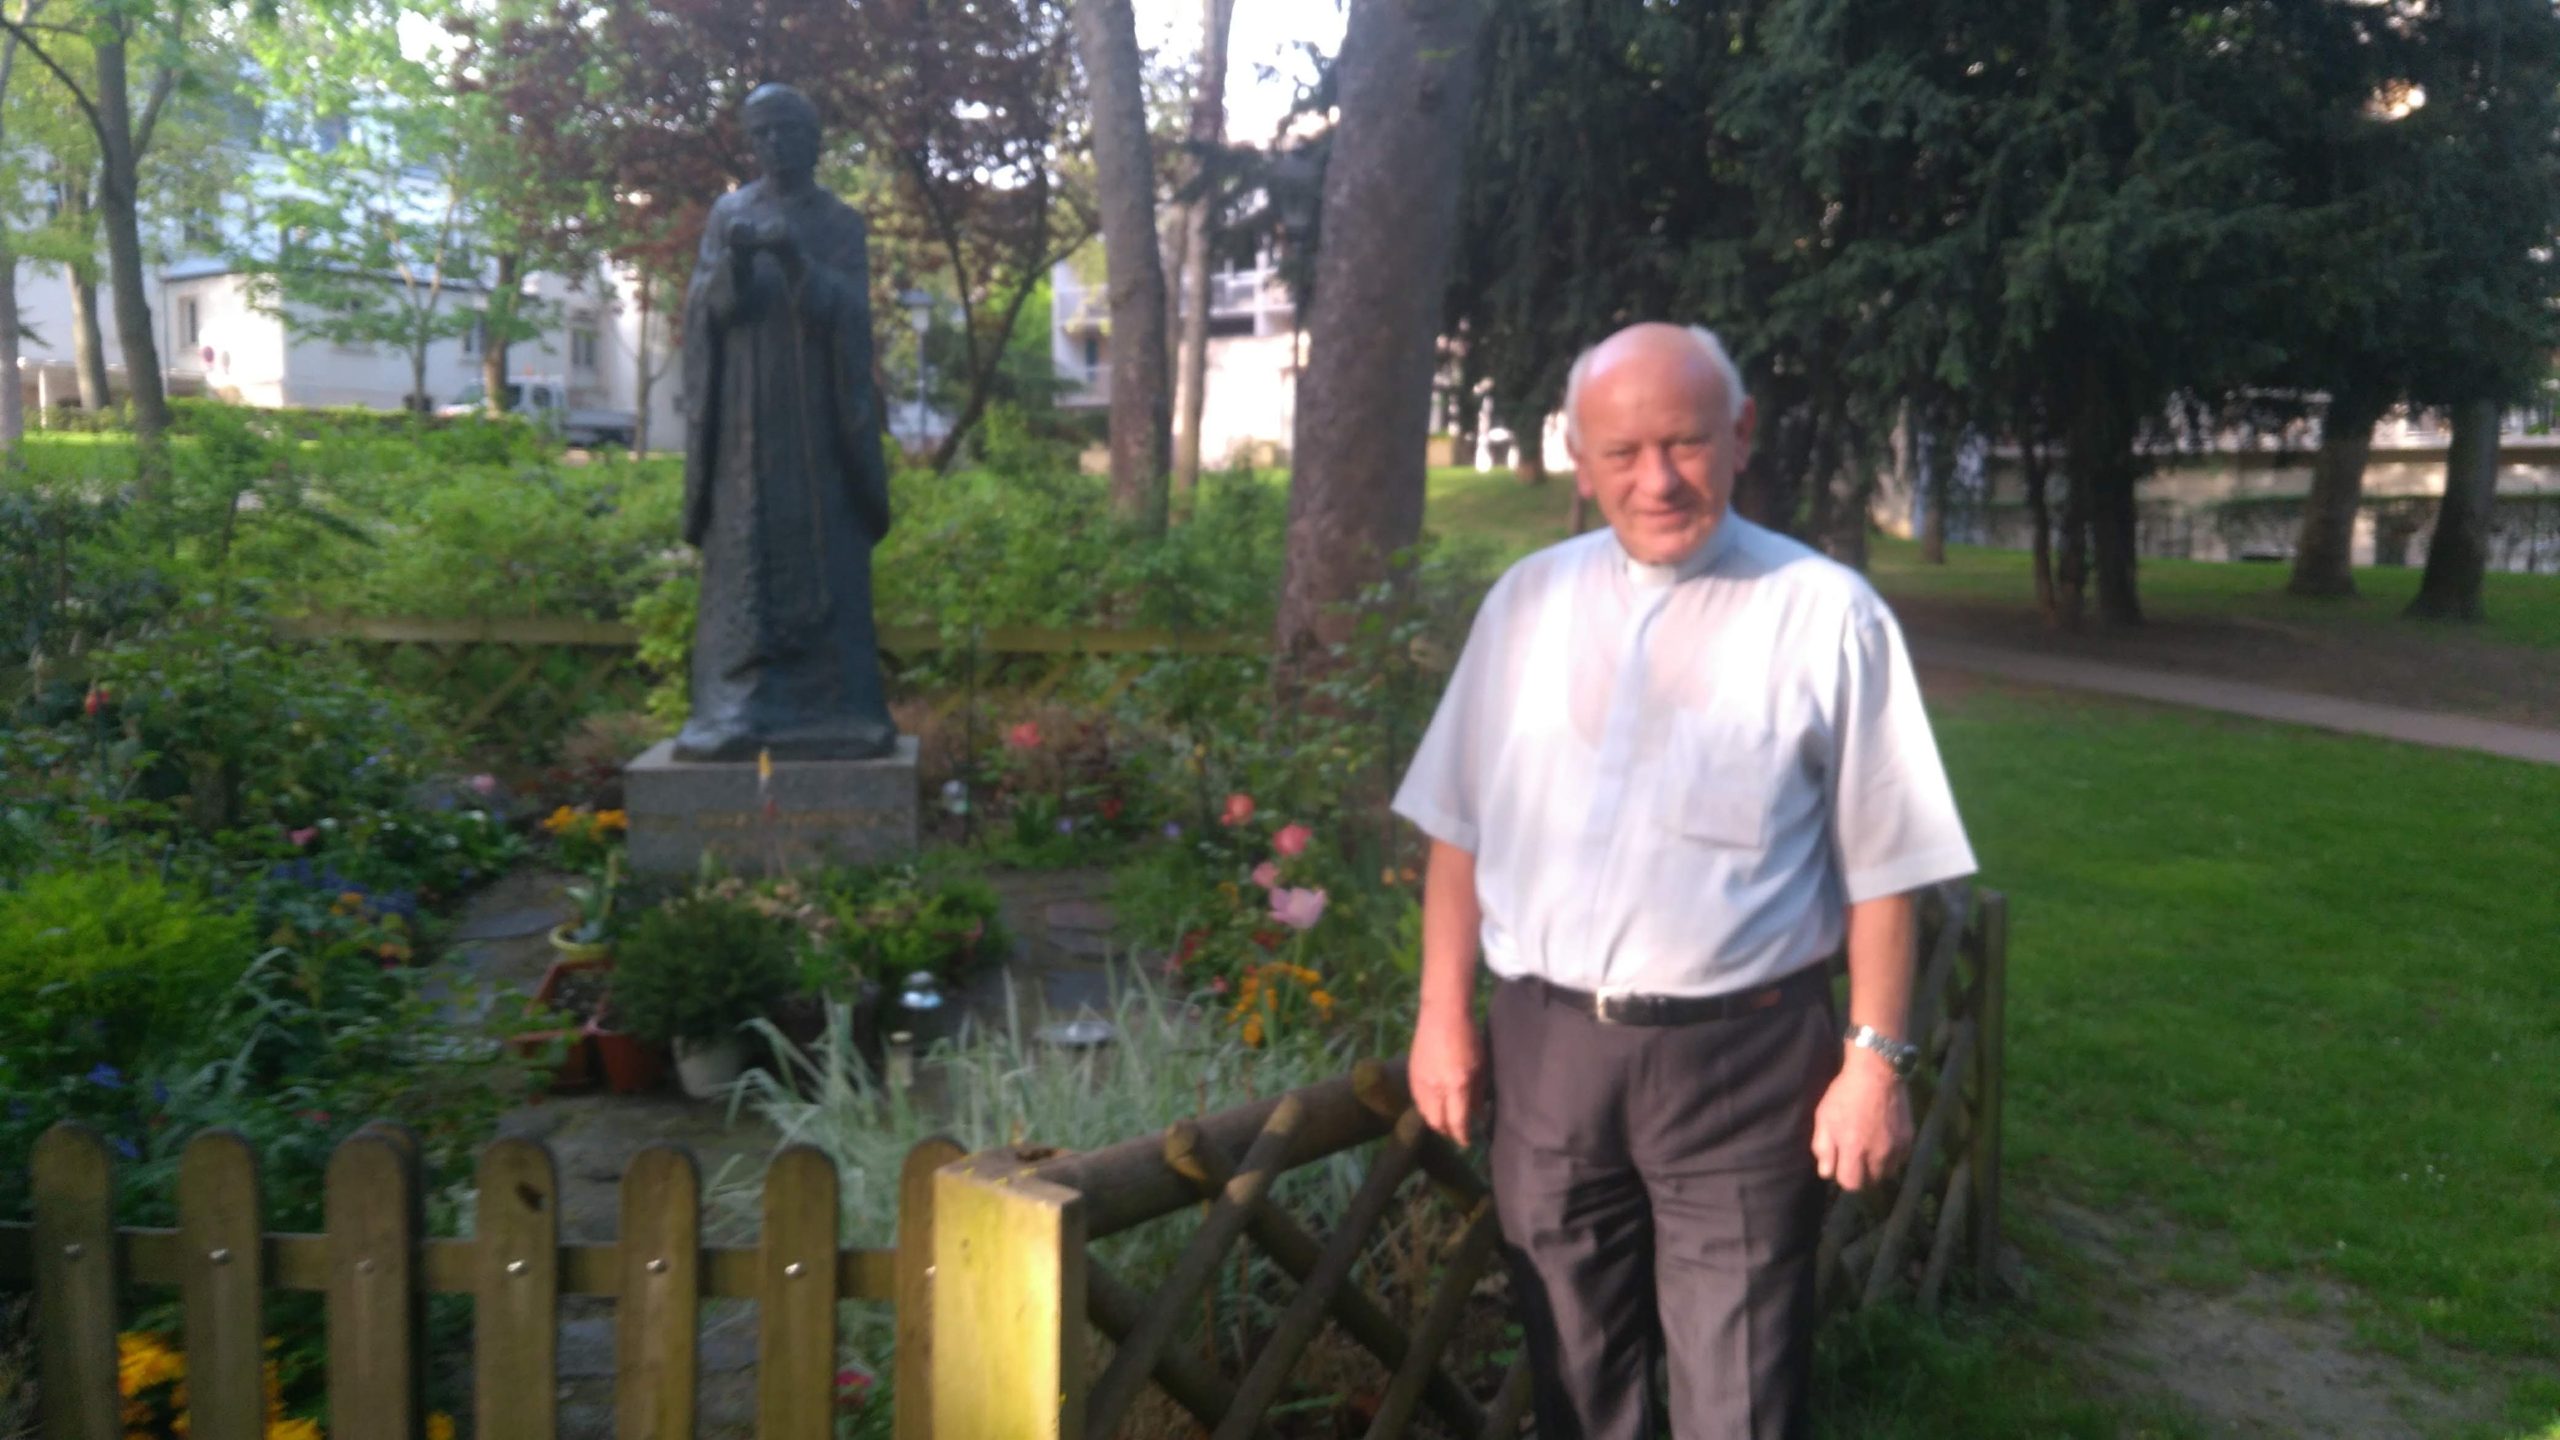 Ks. Krystian Gawron przy pomniku bł. ks. Jerzego Popiełuszki w okolicy Seminarium Polskiego w Paryżu w Issy-les-Moulineaux